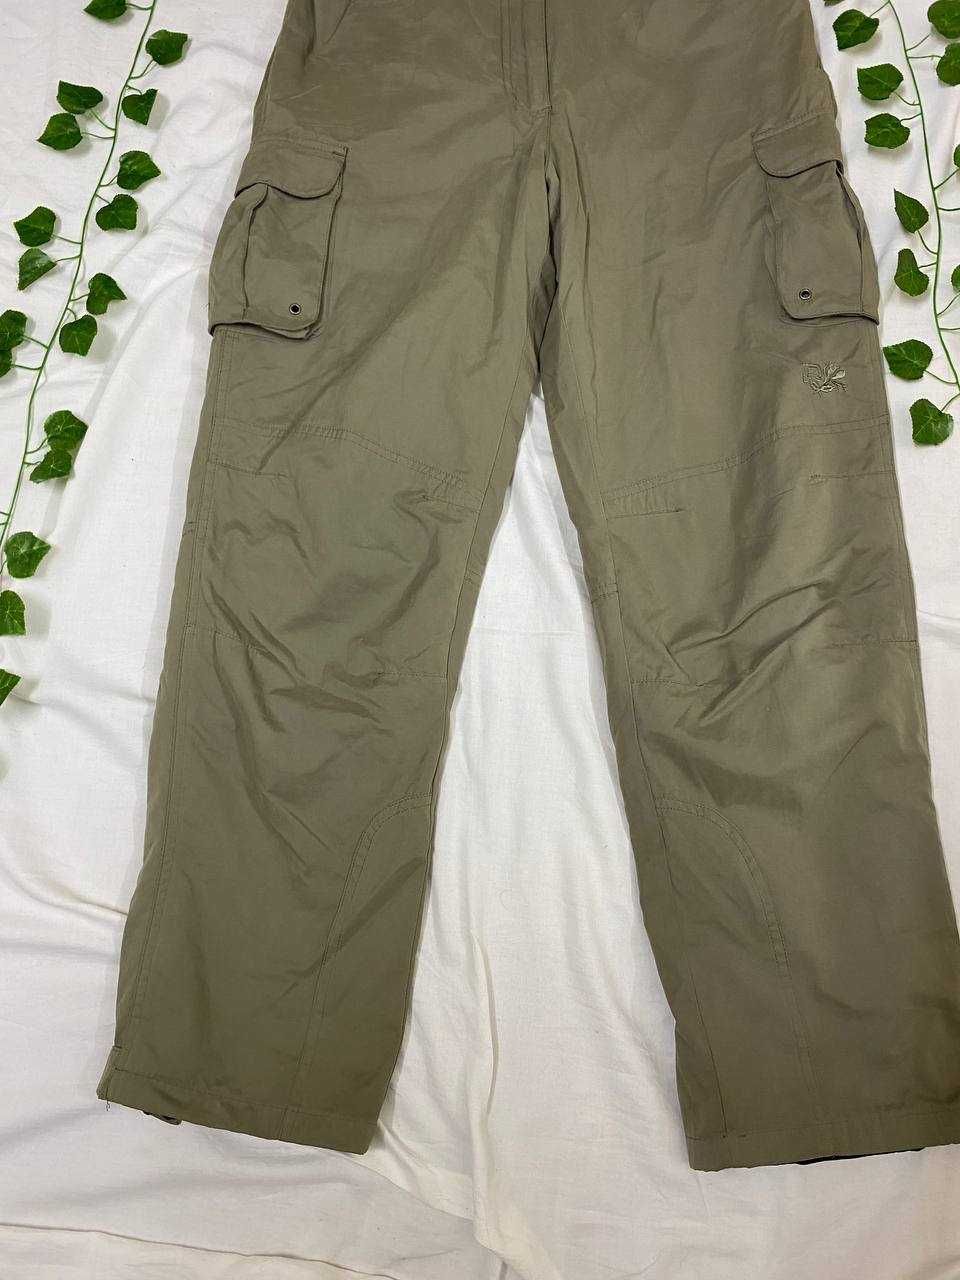 Трекінгові карго штани з підкладом | trekking gorpcore pants